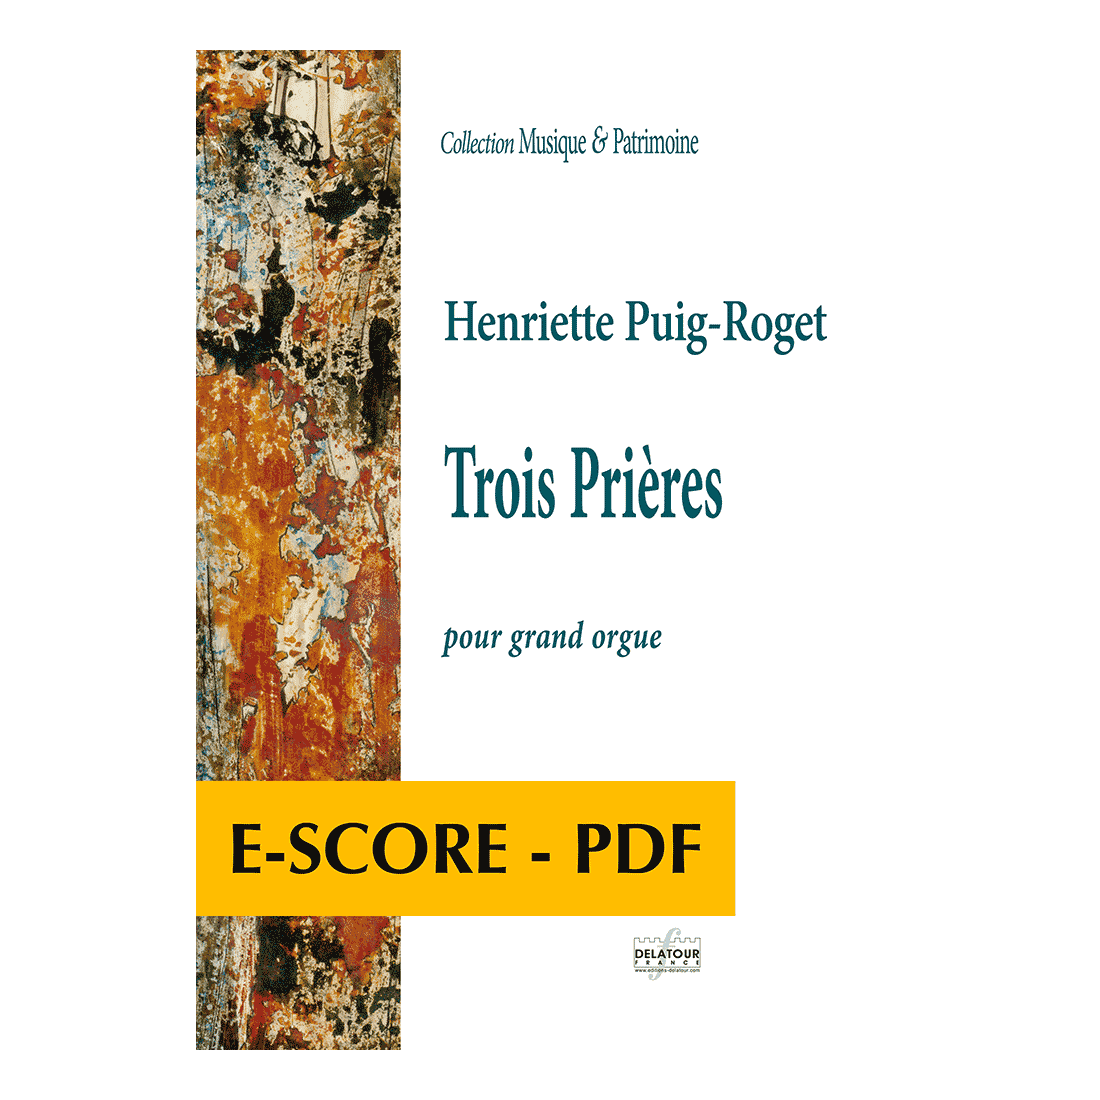 Trois prières für Orgel - E-score PDF